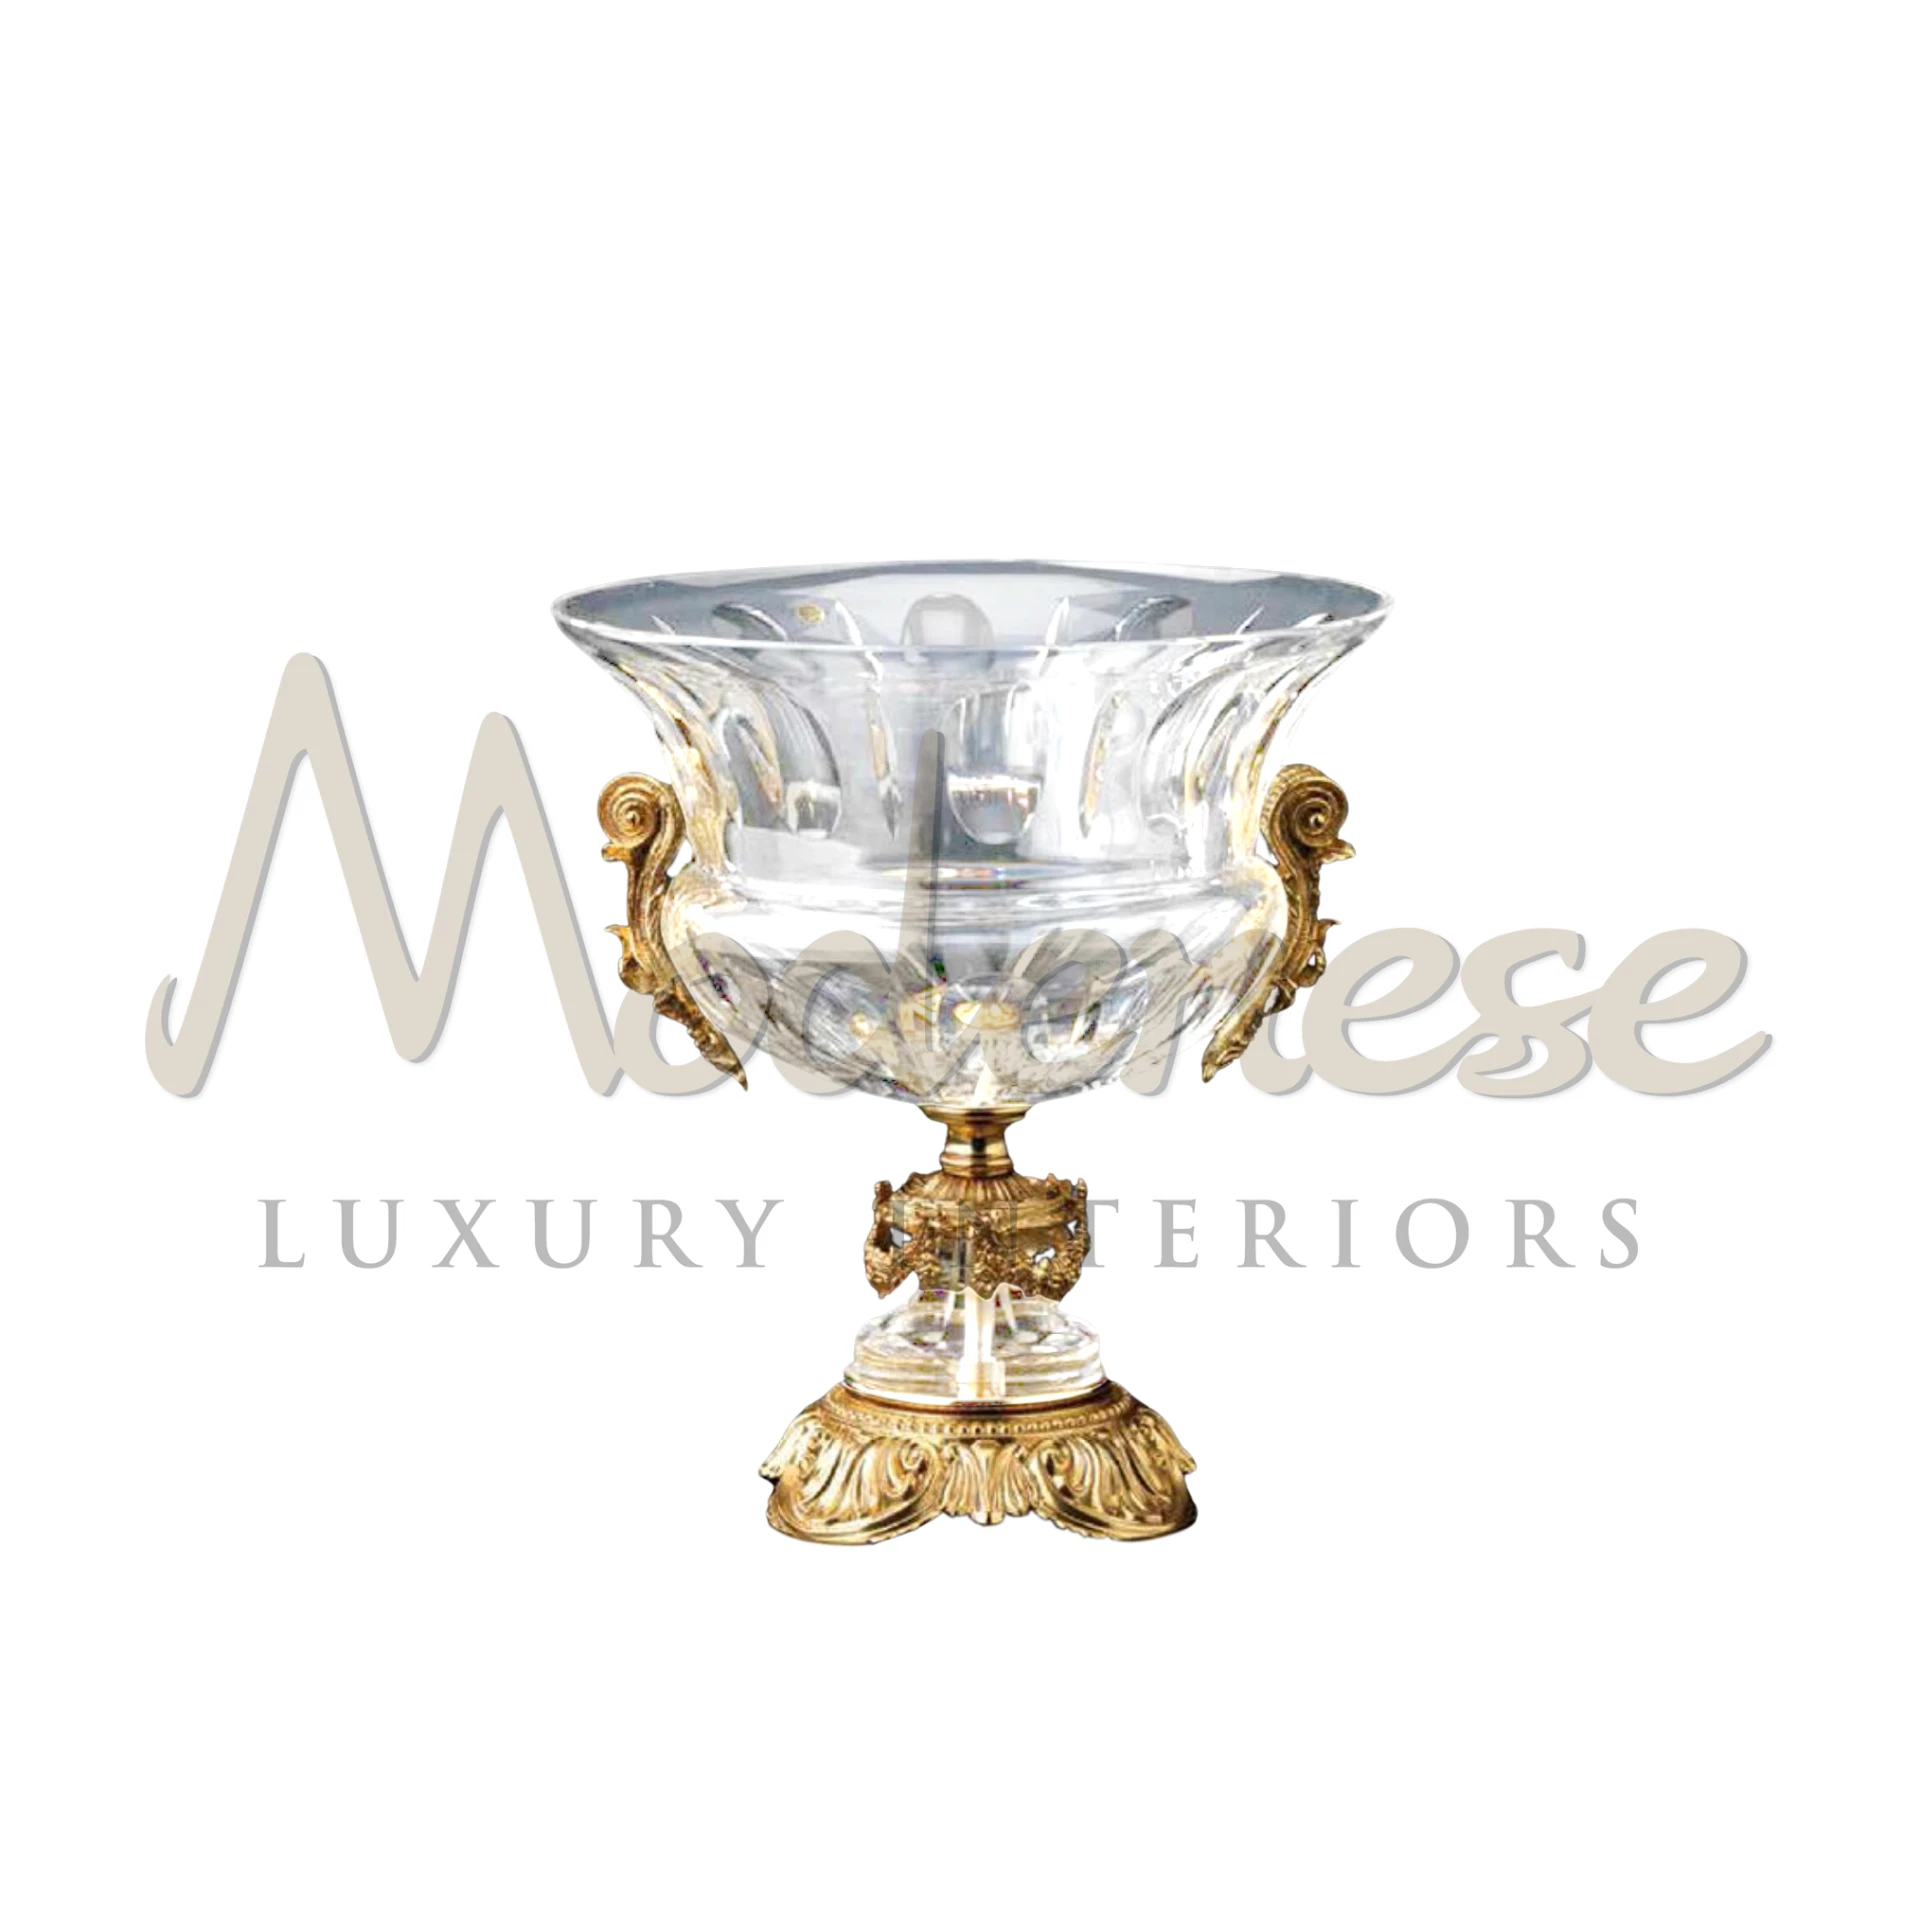 Royal Style Vase with elegant gold leaf finish, enhancing luxury interiors with its glamorous and sleek design.